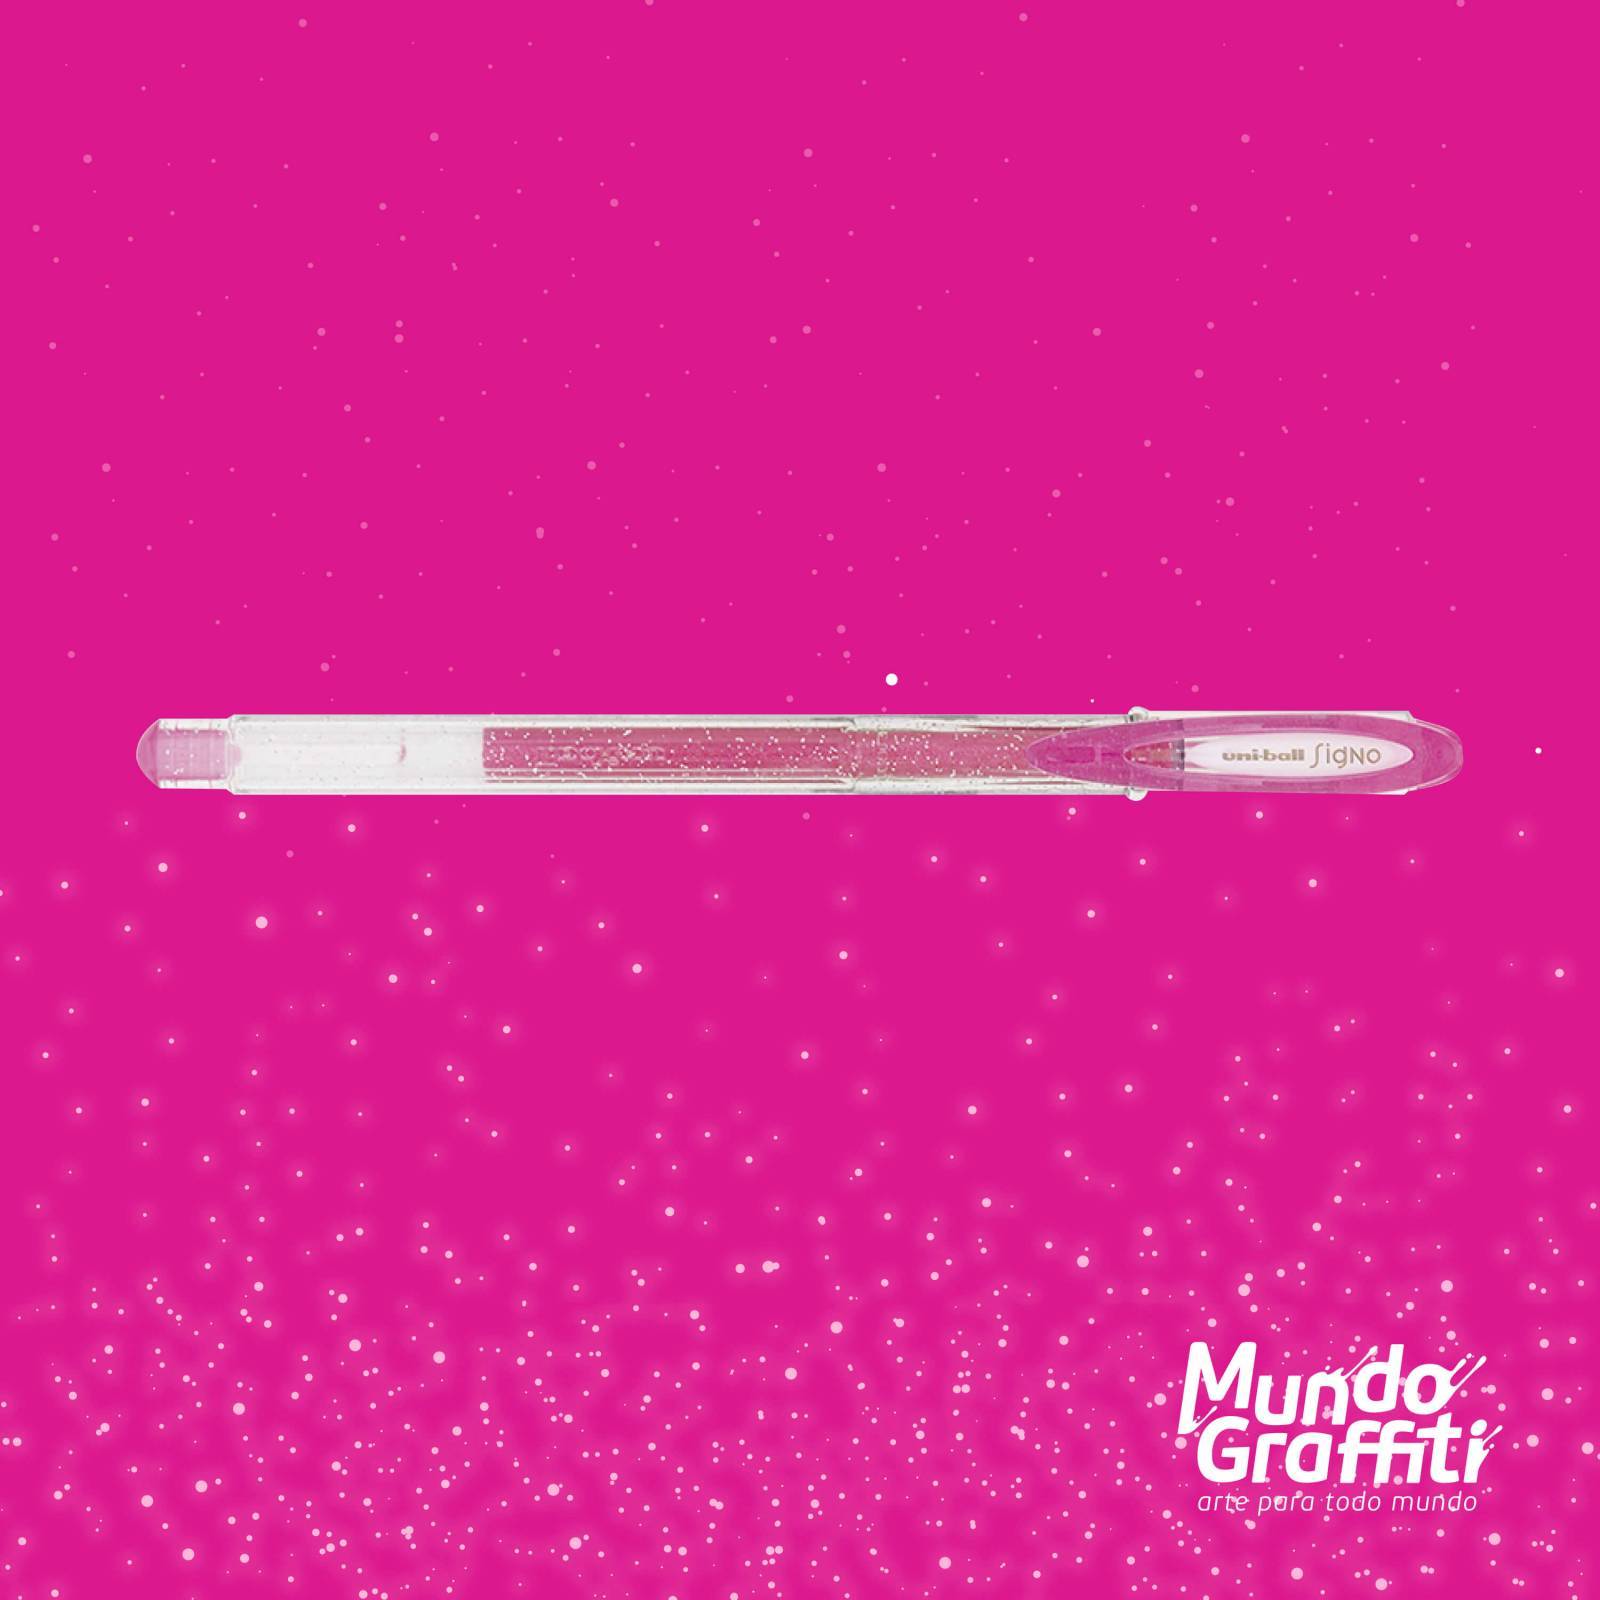 Caneta Signo Gel Sparkling Glitter Rosa 0,7mm - Mundo Graffiti